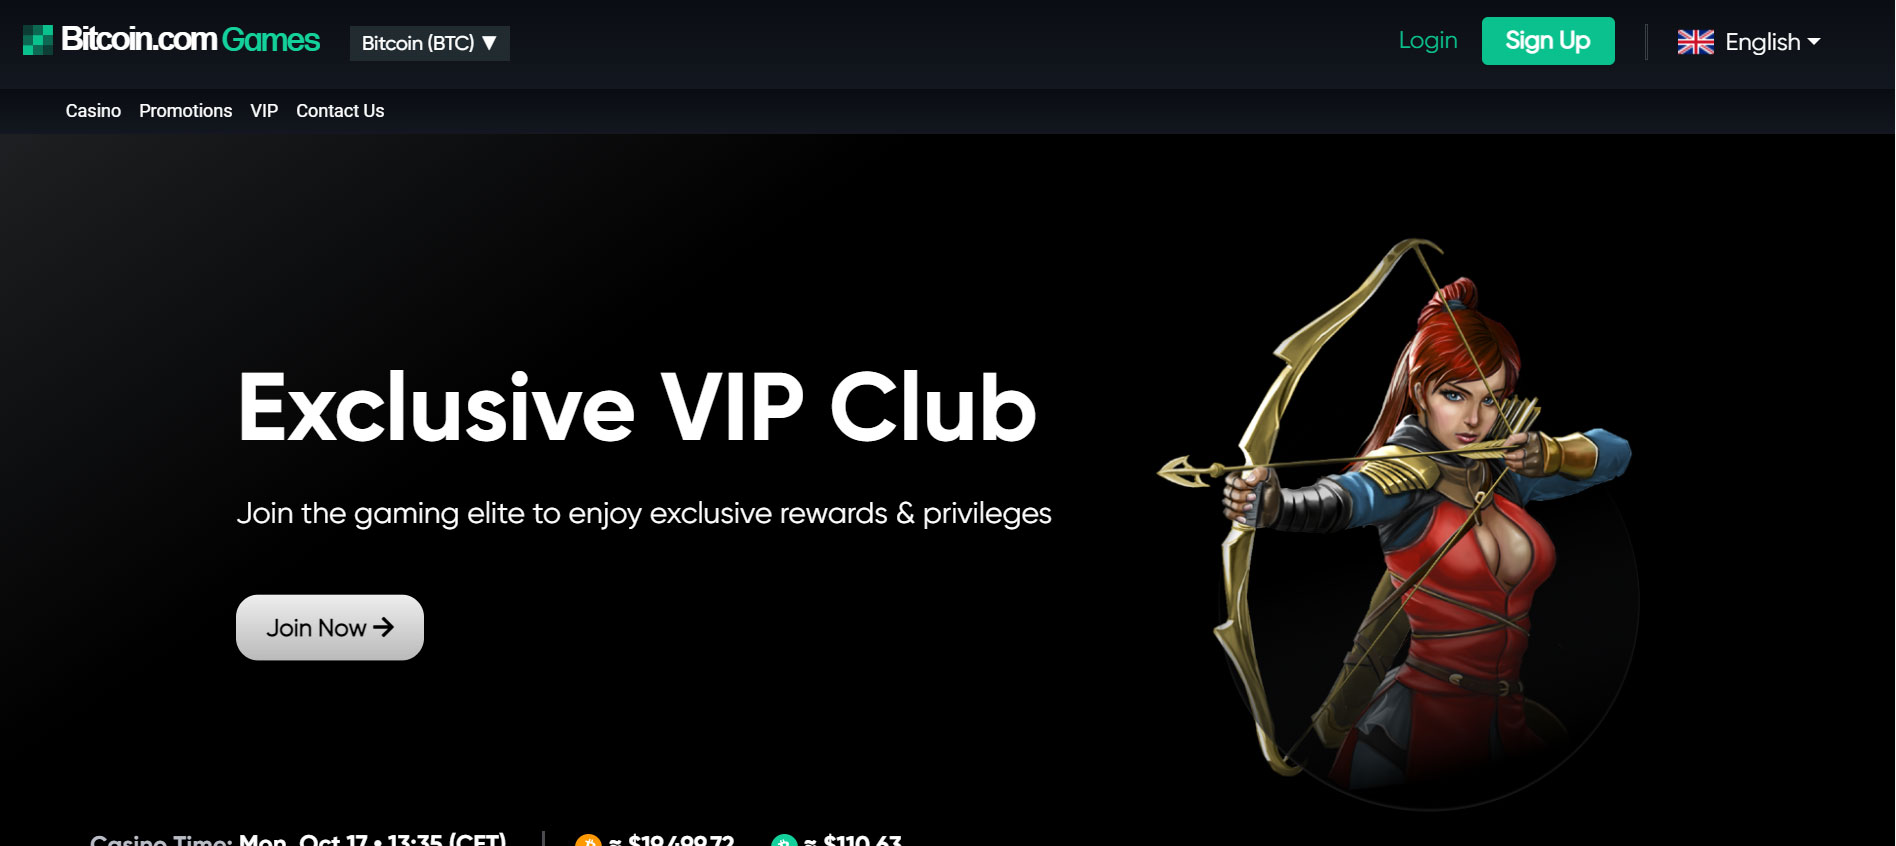 Bitcoin Games Casino VIP Club